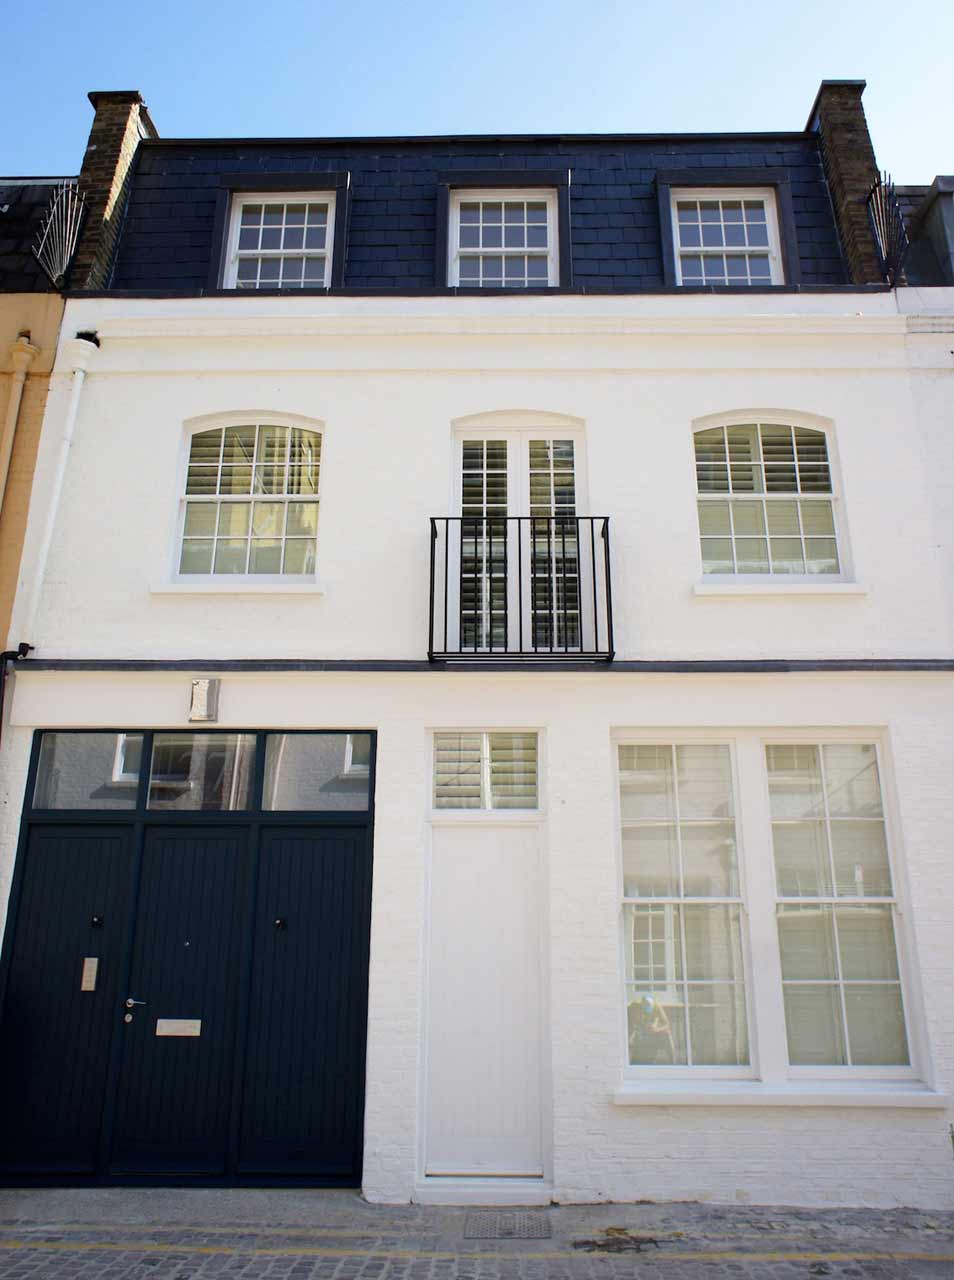 Petersham Place South Kensington Reconfigured Mews House 06